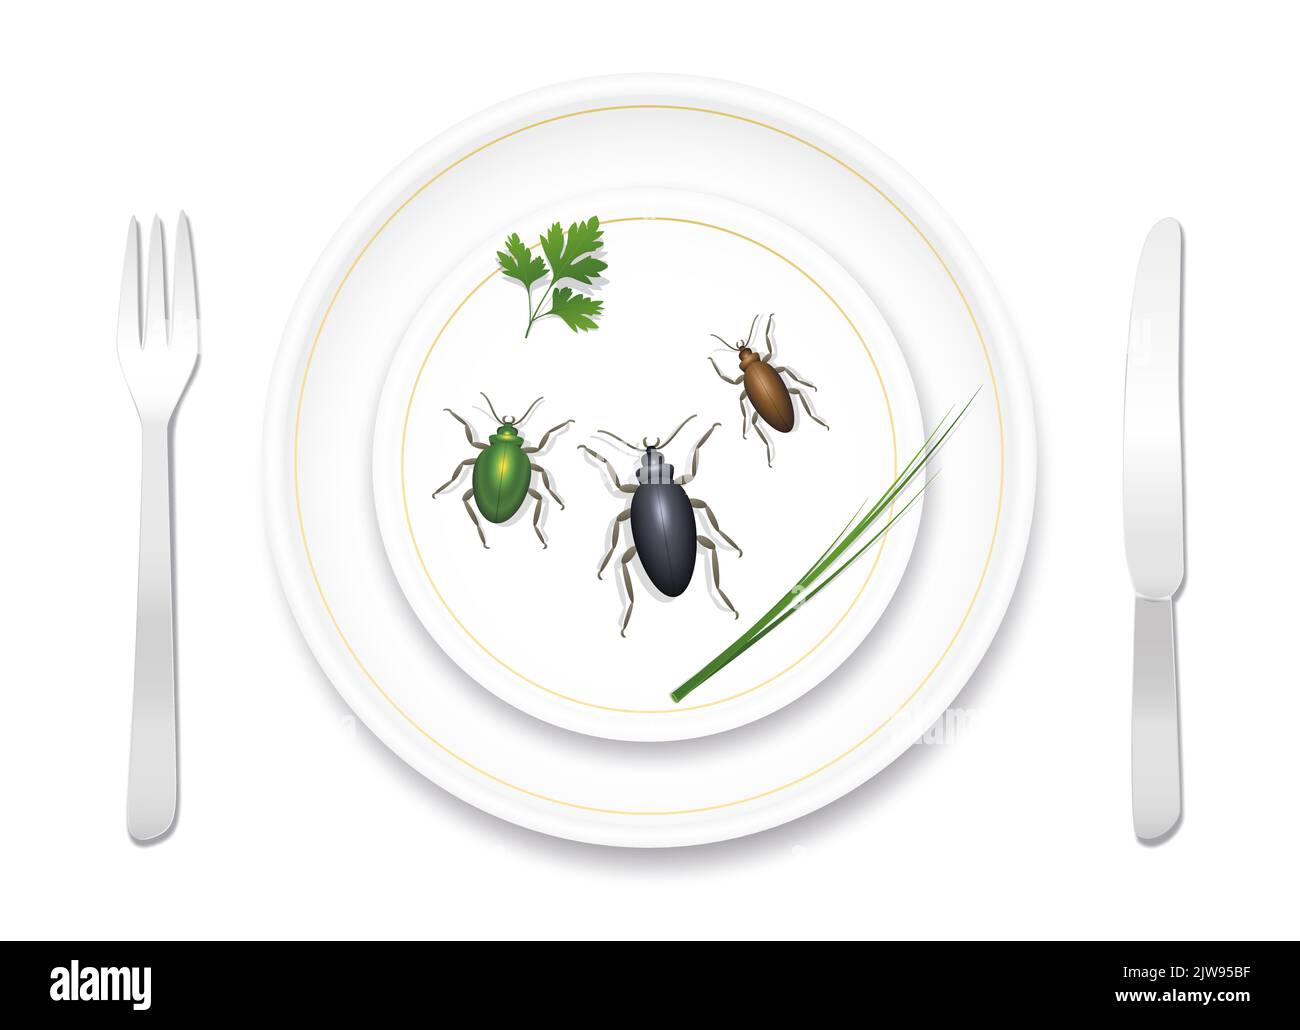 Comer insectos, insectos, escarabajos. Vajilla de porcelana fina y noble bien preparada con tres sabrosas bichos y hierbas saludables. Comida deliciosa o asquerosa. Foto de stock